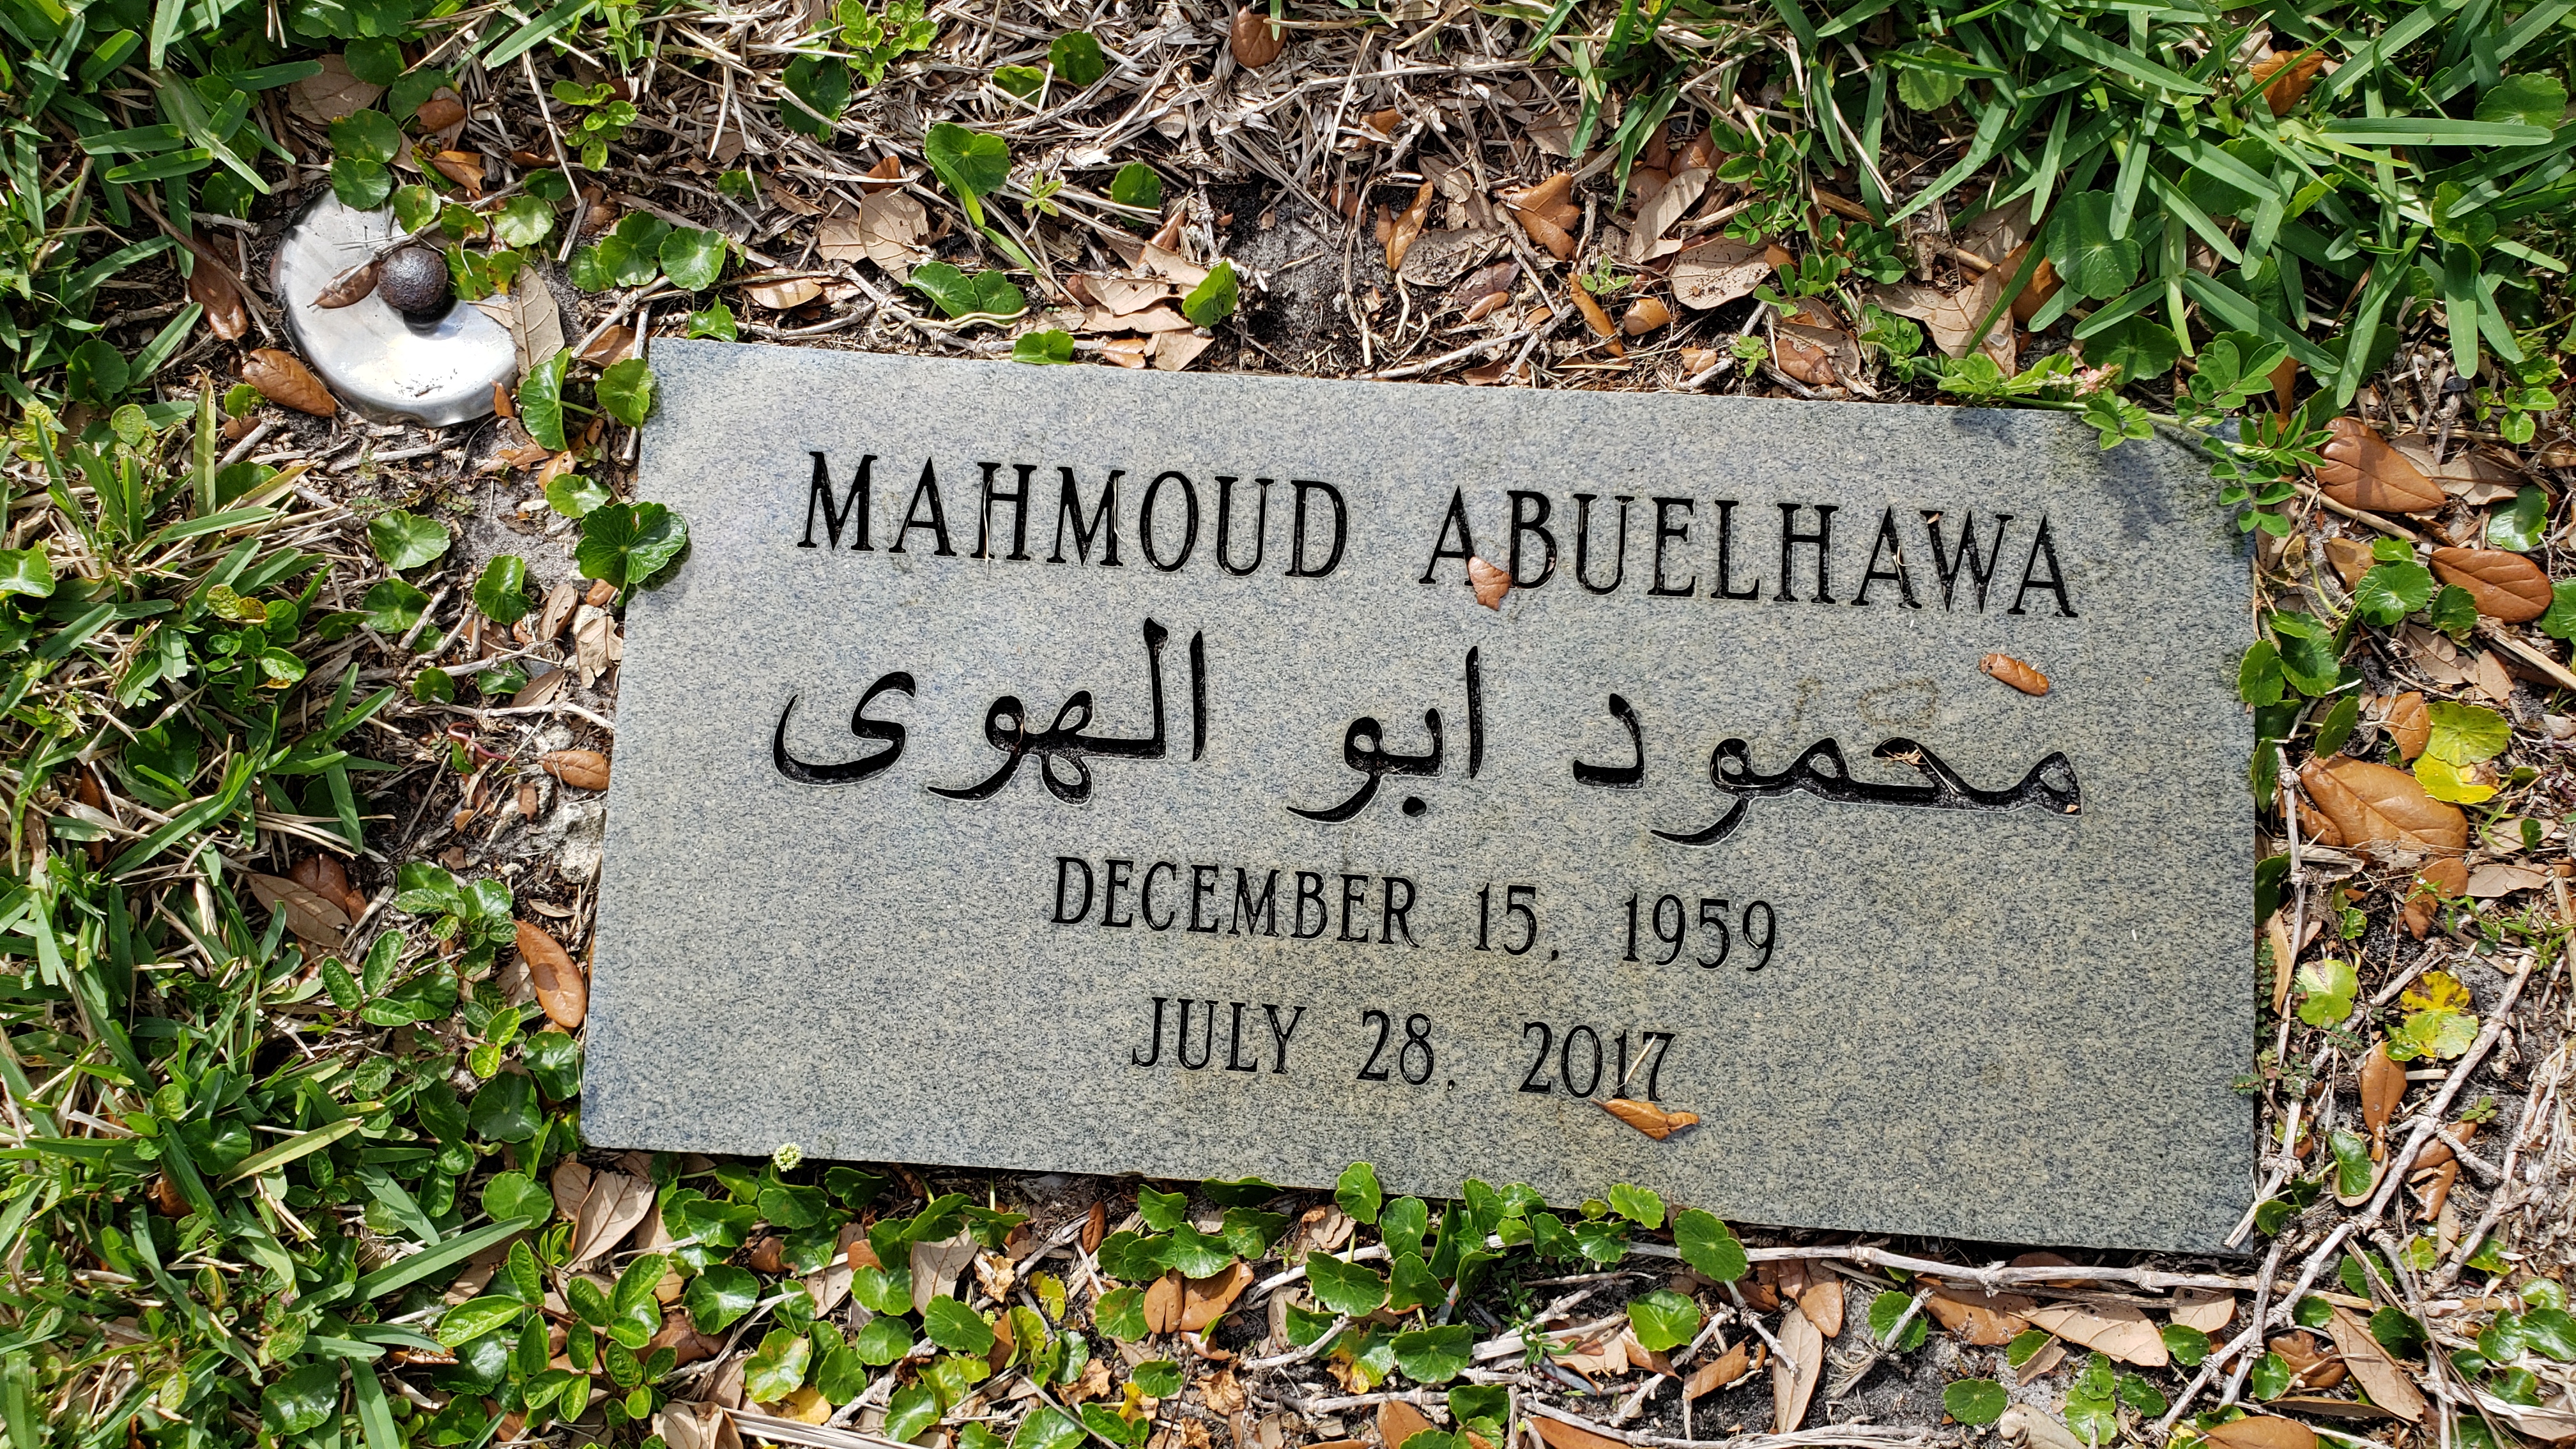 Mahmoud Abuelhawa